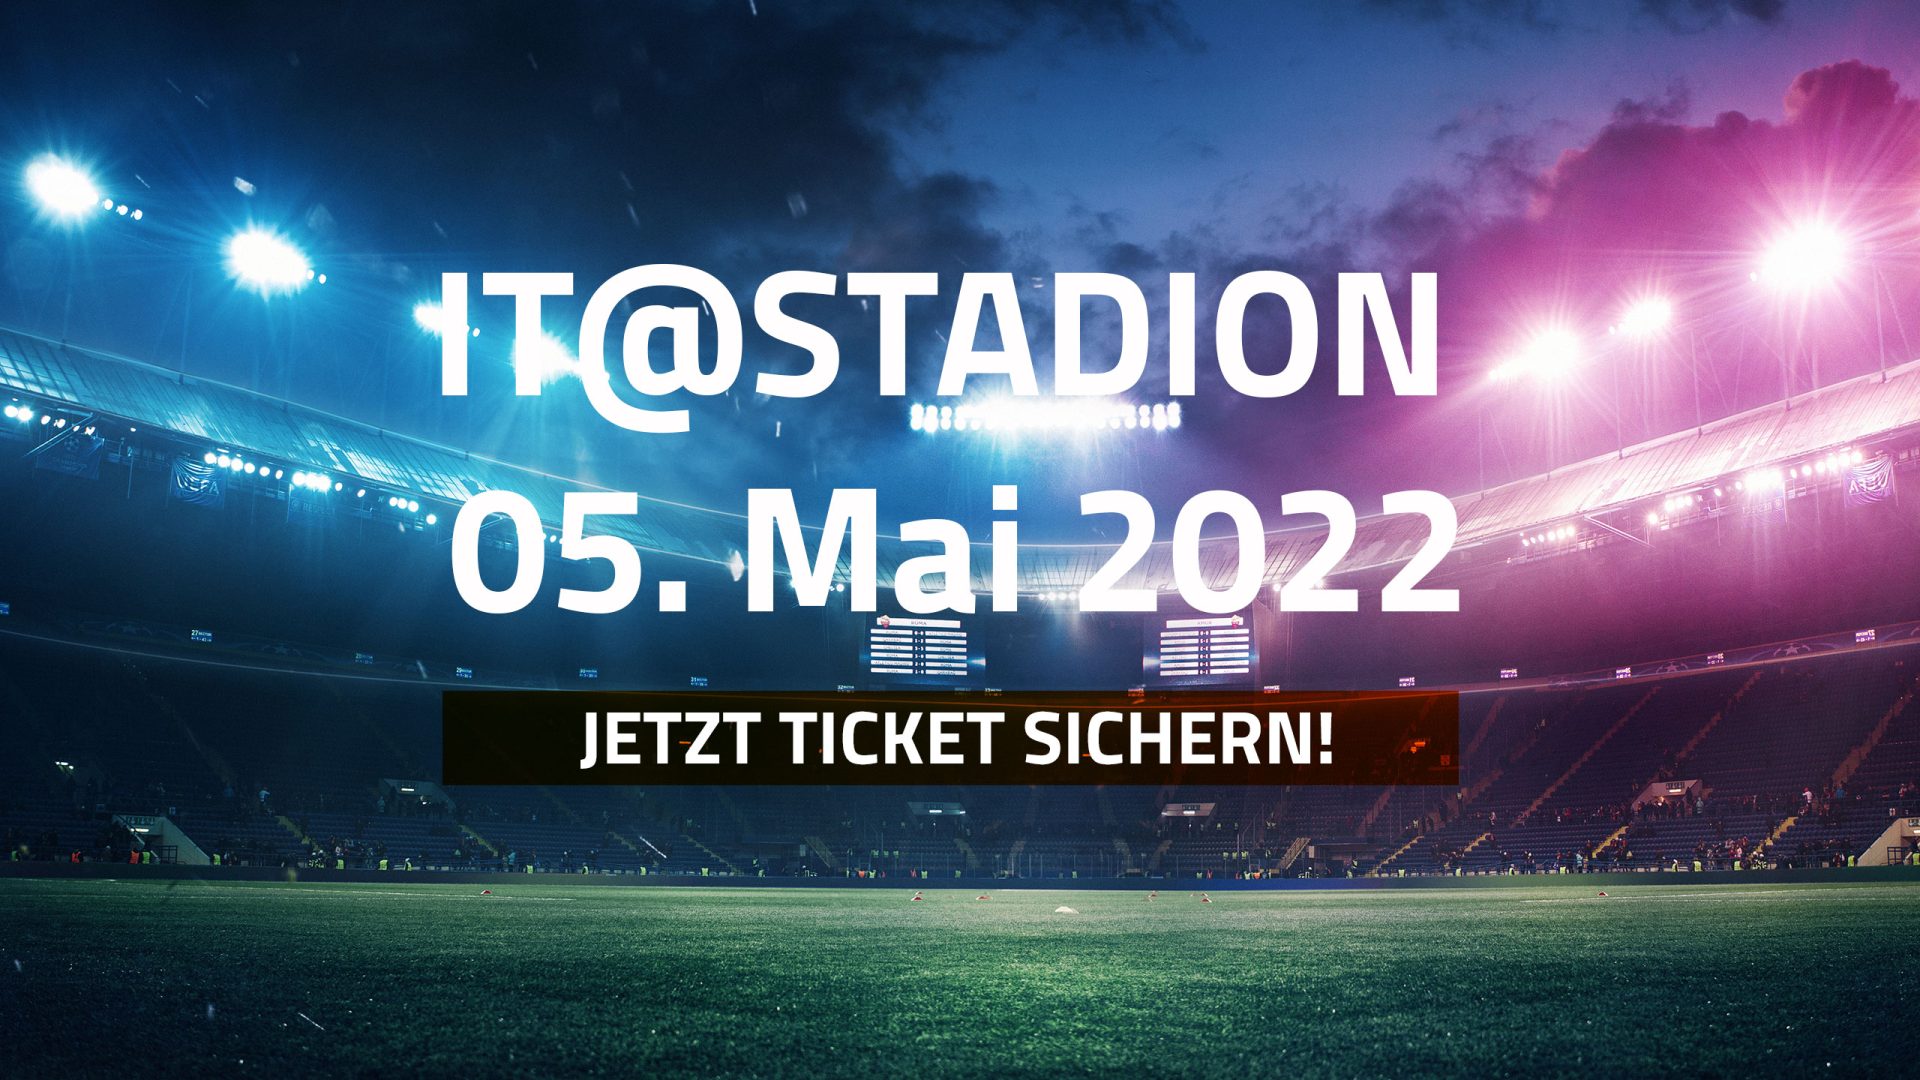 IT@STADION-Ticket-sichern